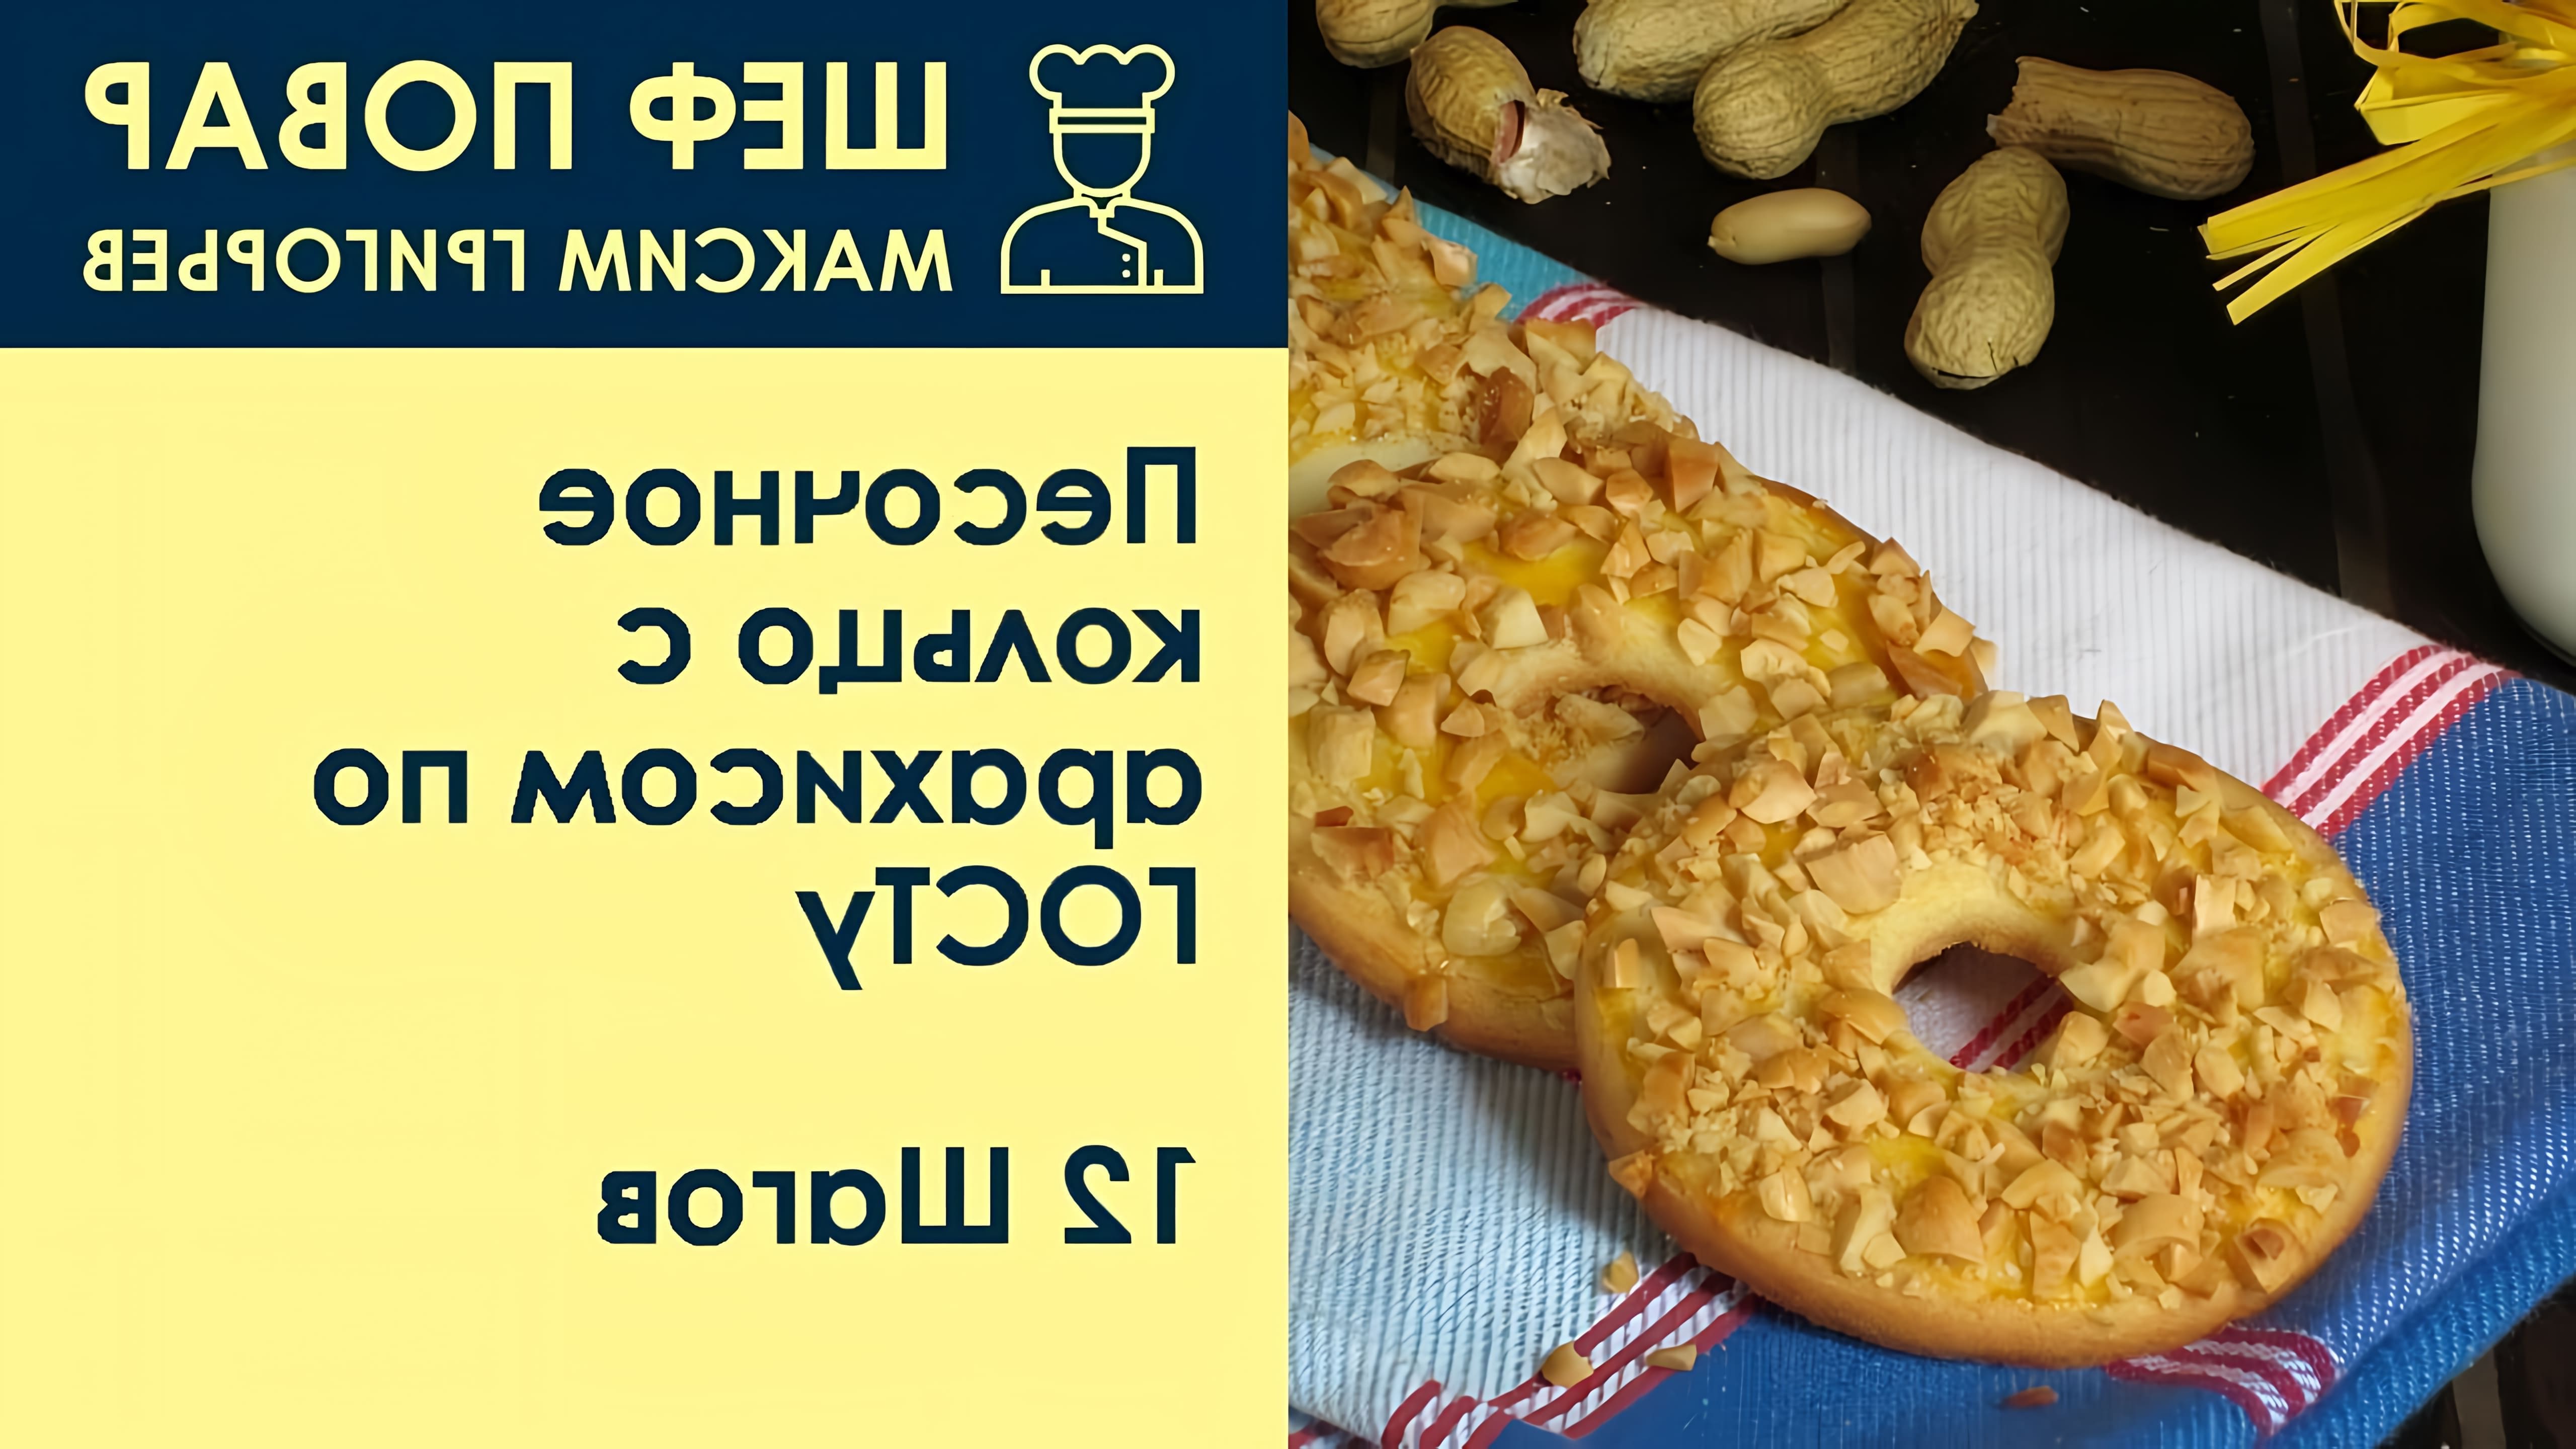 В этом видео шеф-повар Максим Григорьев показывает, как приготовить песочное кольцо с арахисом по ГОСТу